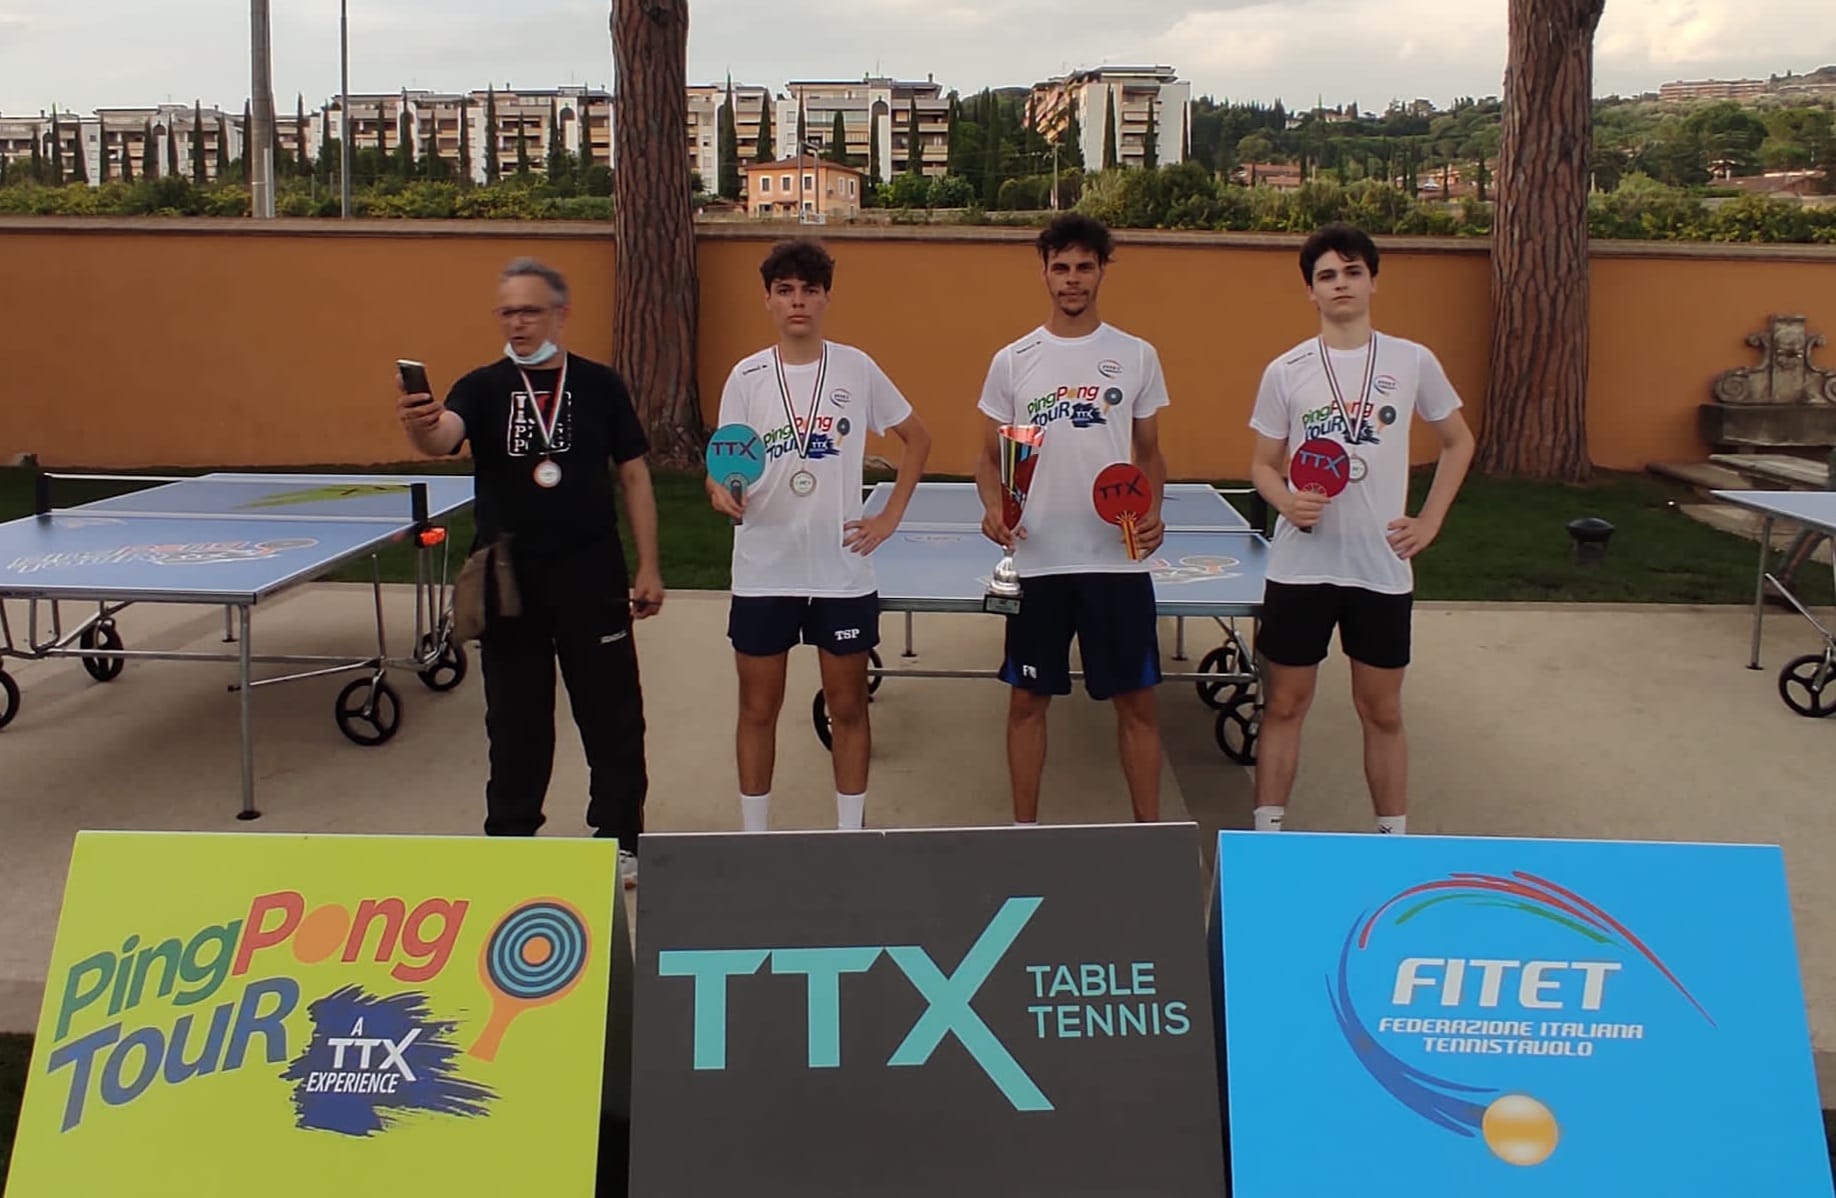 Foto 1 Ping Pong Tour 2021 tappa di Perugia il podio del torneo ufficiale